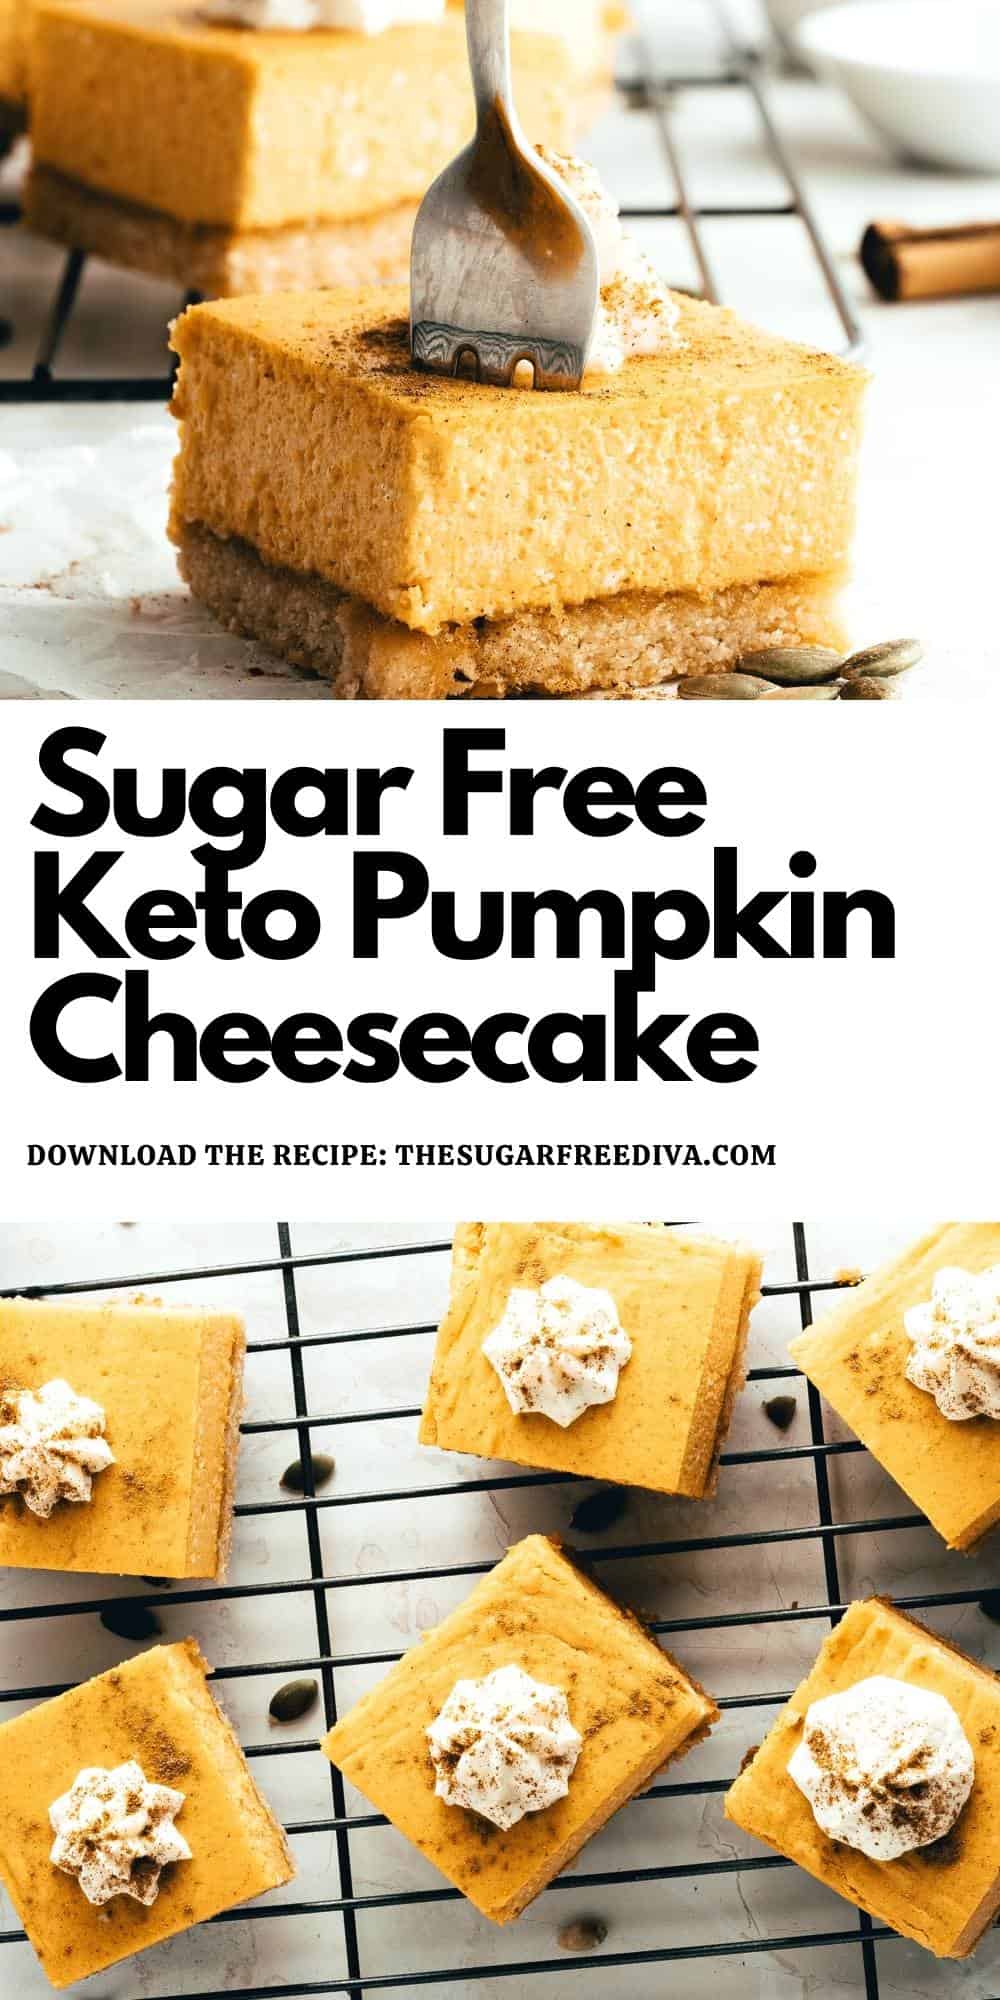 Sugar Free Keto Pumpkin Cheesecake